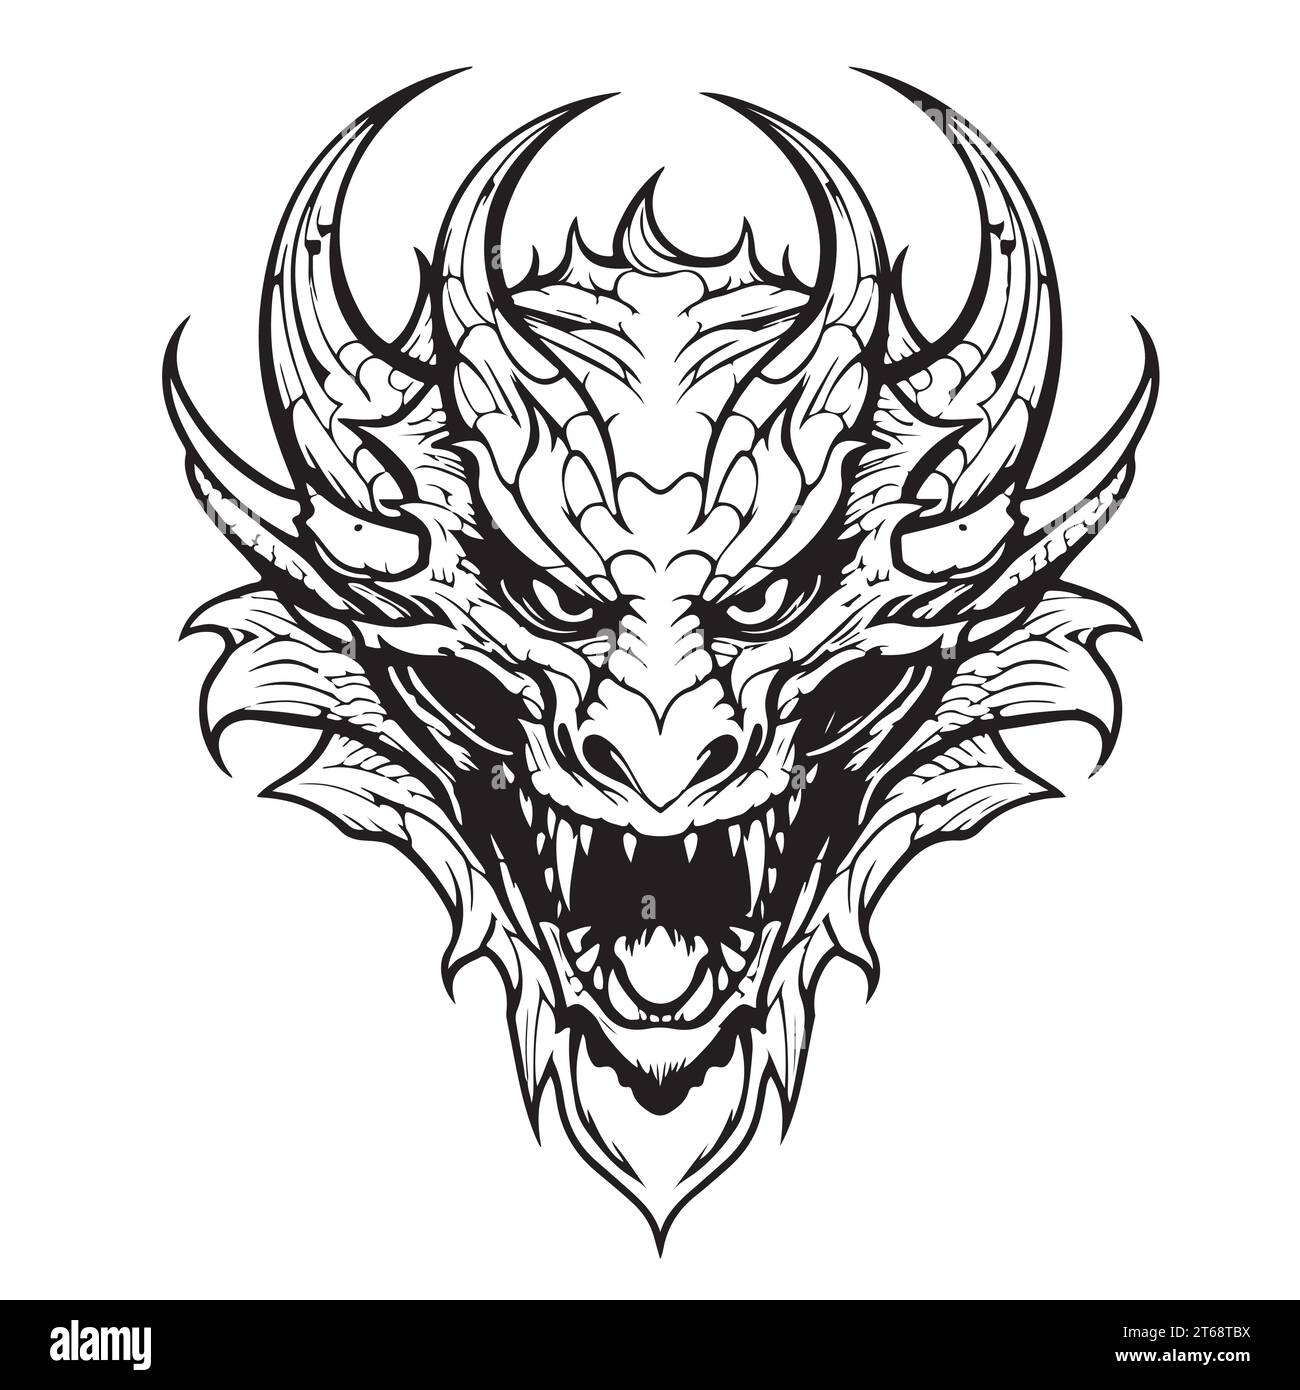 Croquis de dragon dessiné à la main, symbole et signe du nouvel an Illustration de Vecteur